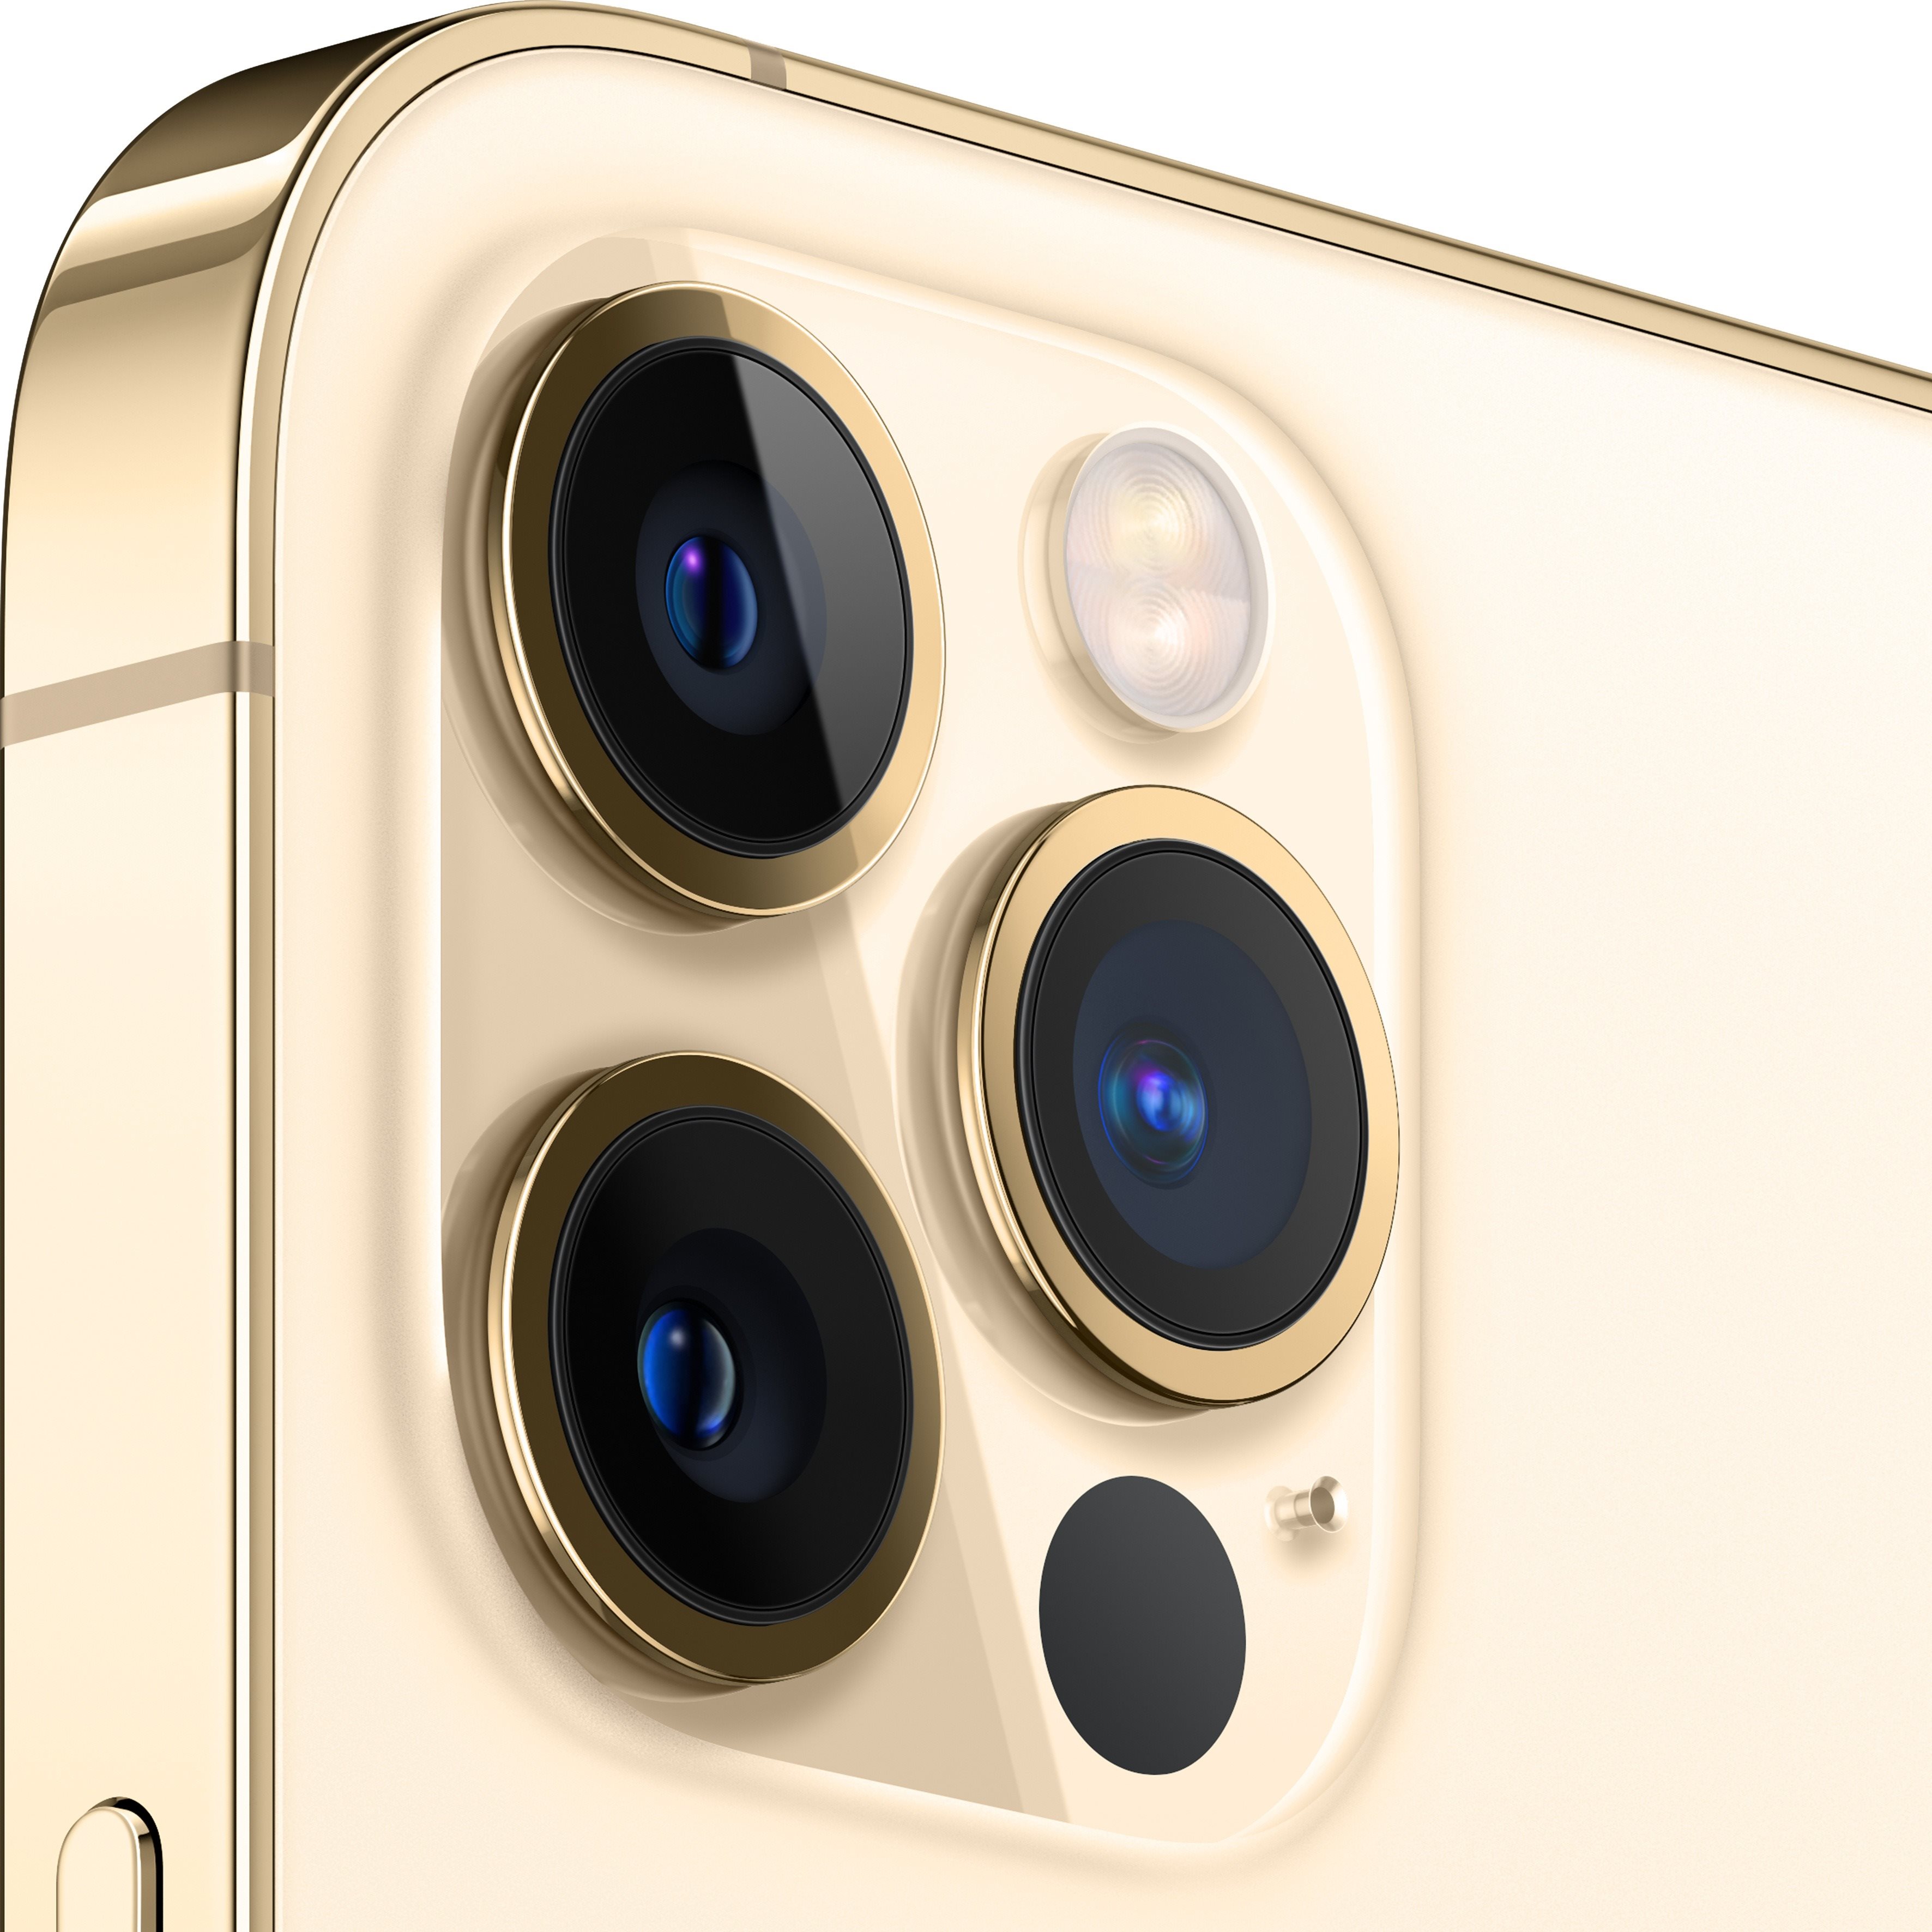 iPhone 12 Pro a jeho trojitá fotosoustava